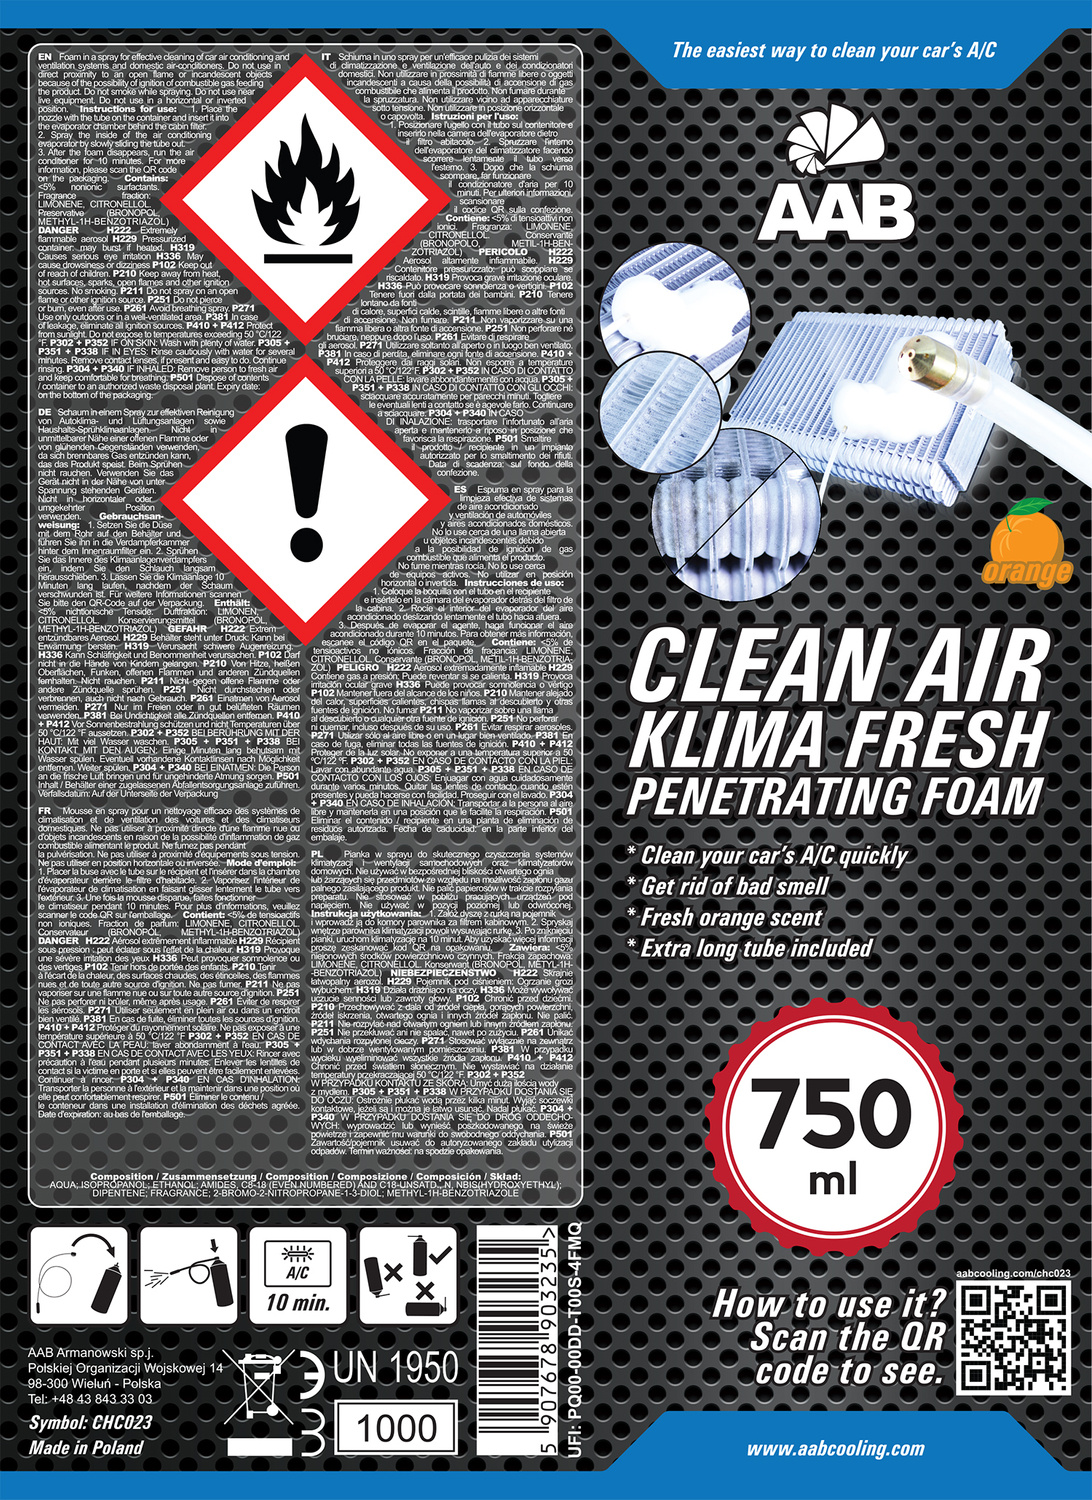 AAB CLEAN AIR KLIMA FRESH PENETRATING FOAM 750 ml